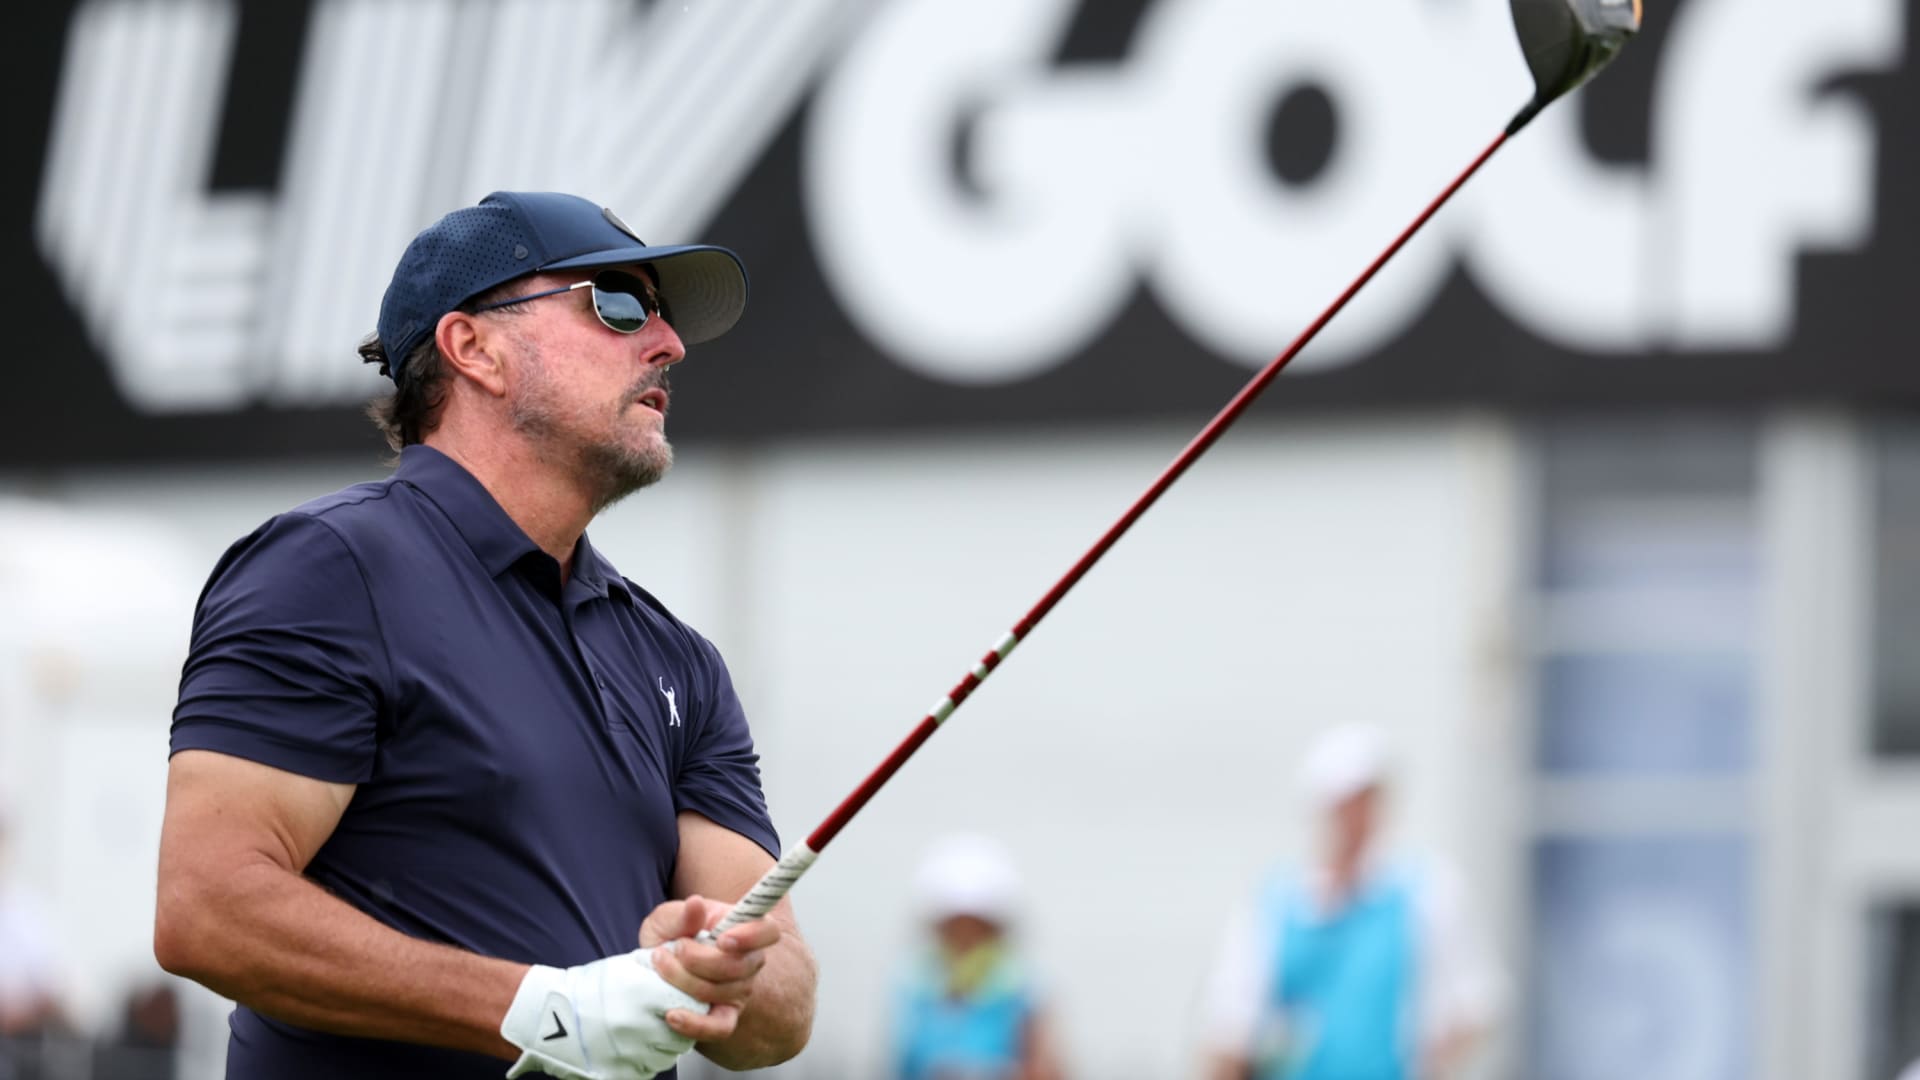 PGA Tour denies renewal of membership for LIV-affiliated players